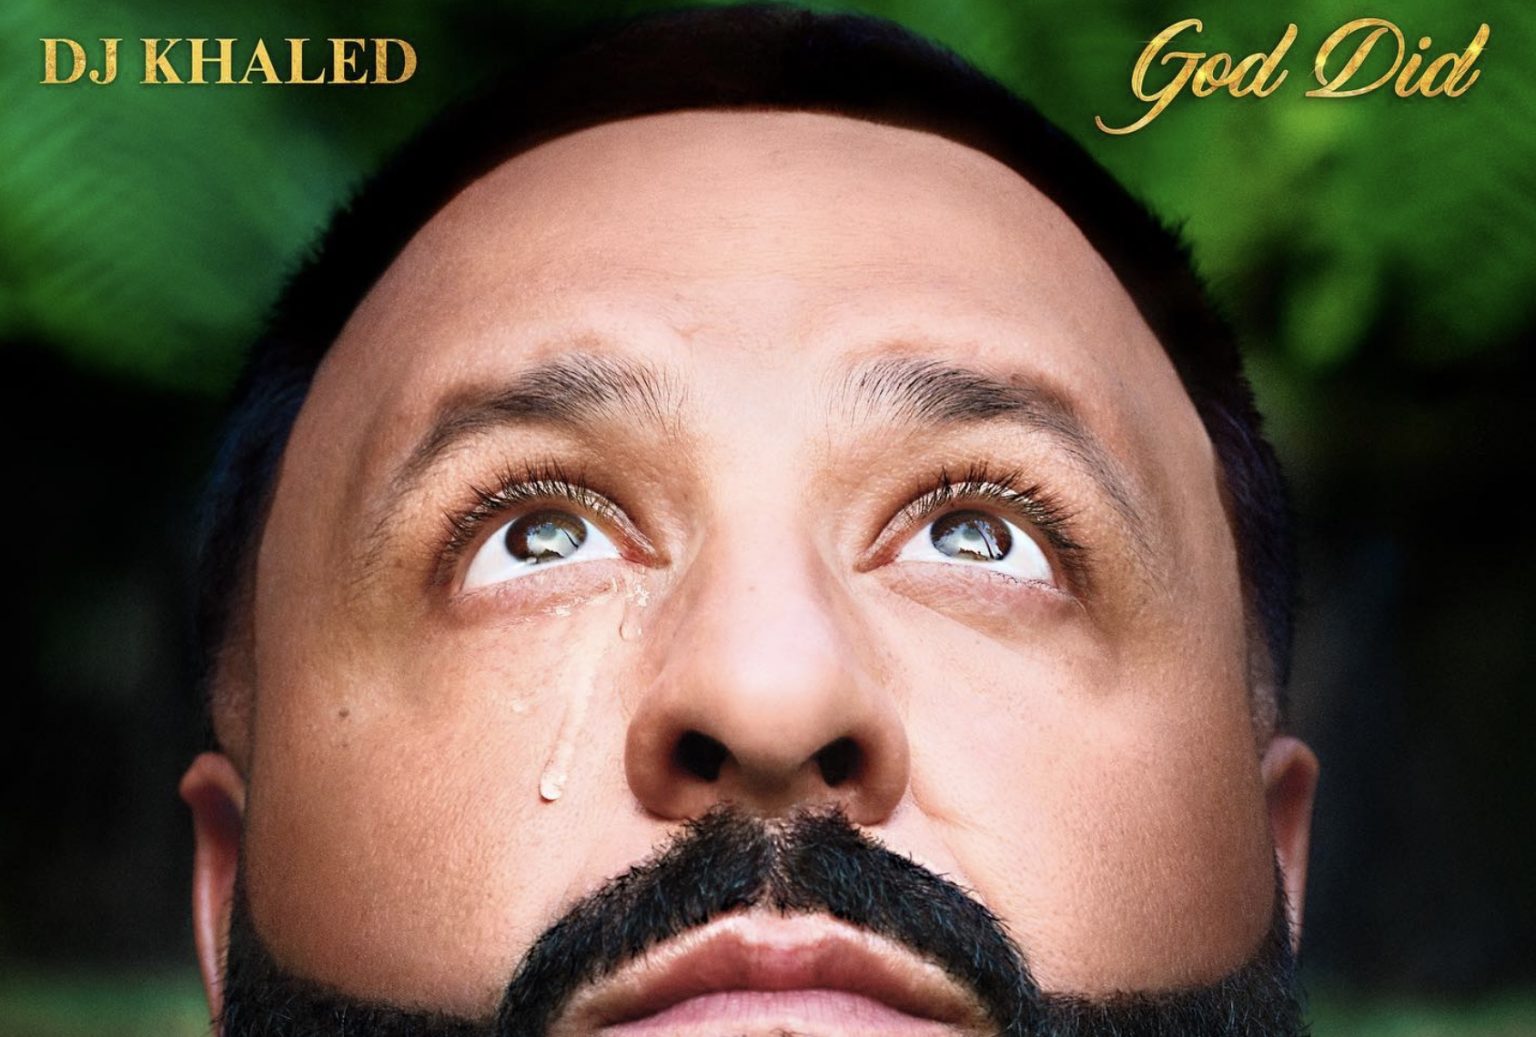 DJ Khaled reveals "God Did" tracklist 